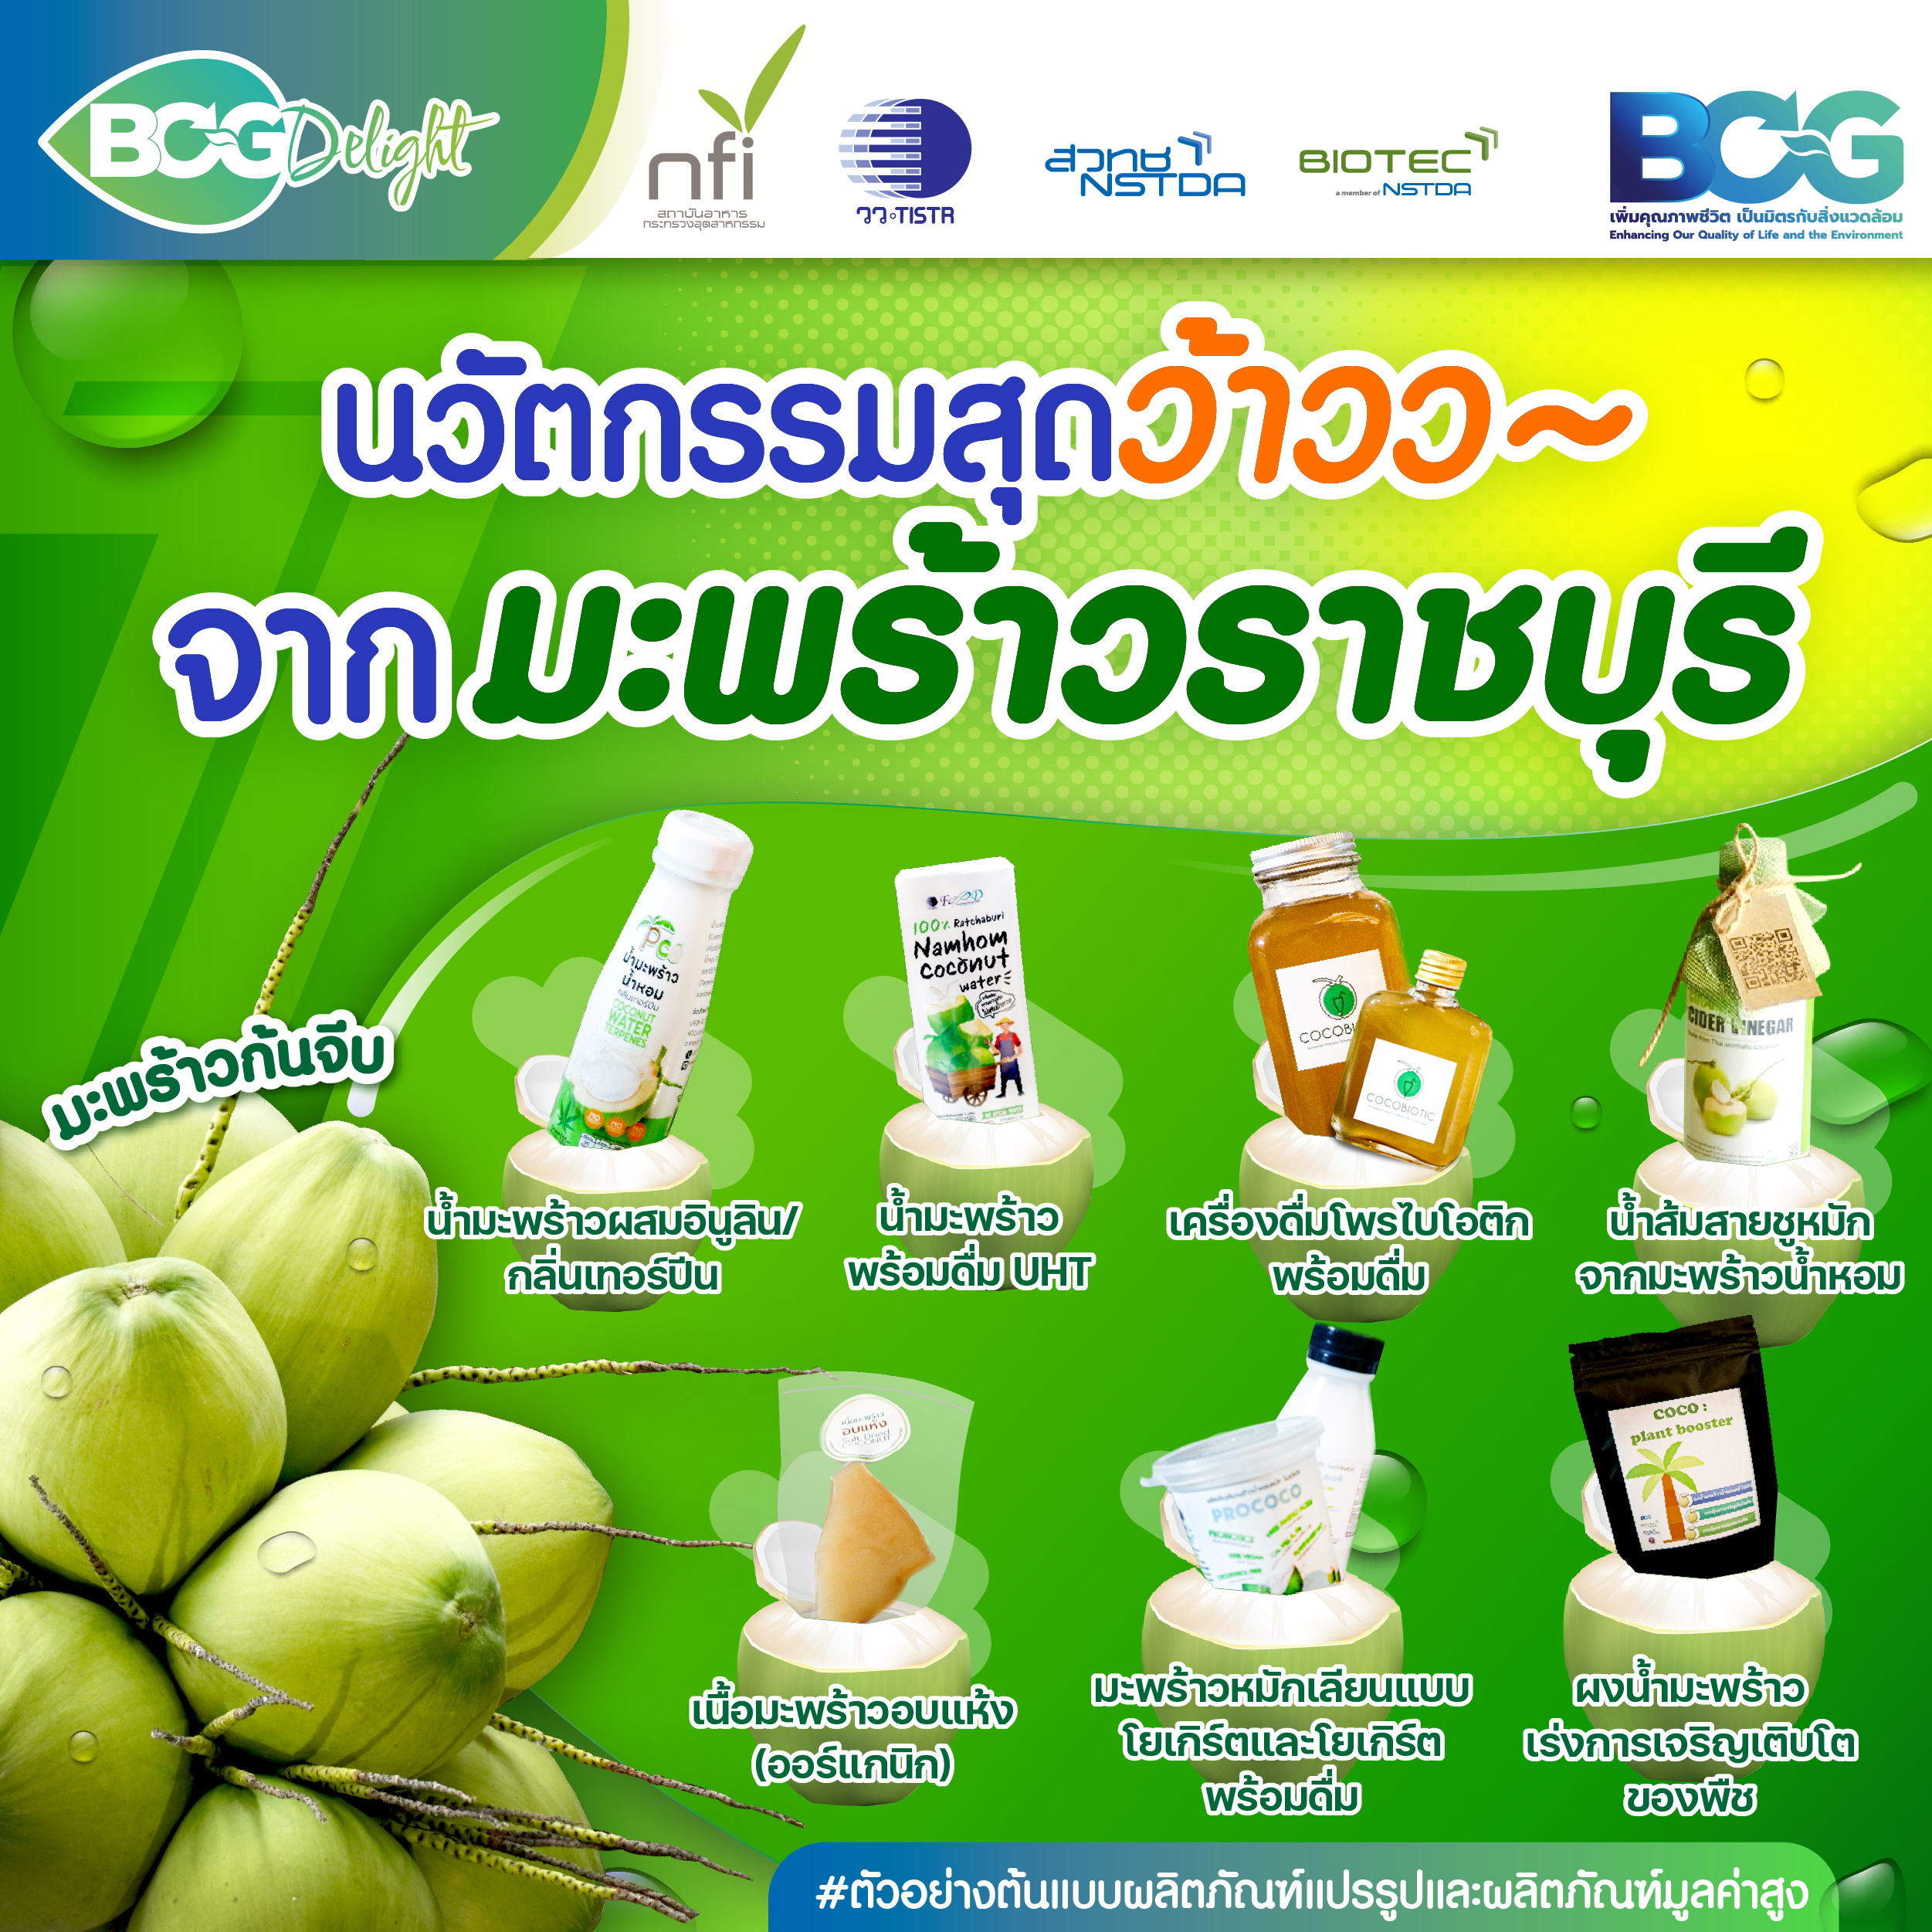 ลุยสวน “มะพร้าวน้ำหอมราชบุรี” ใช้เทคโนโลยีพัฒนาผลิตภัณฑ์แปรรูปและผลิตภัณฑ์มูลค่าสูง